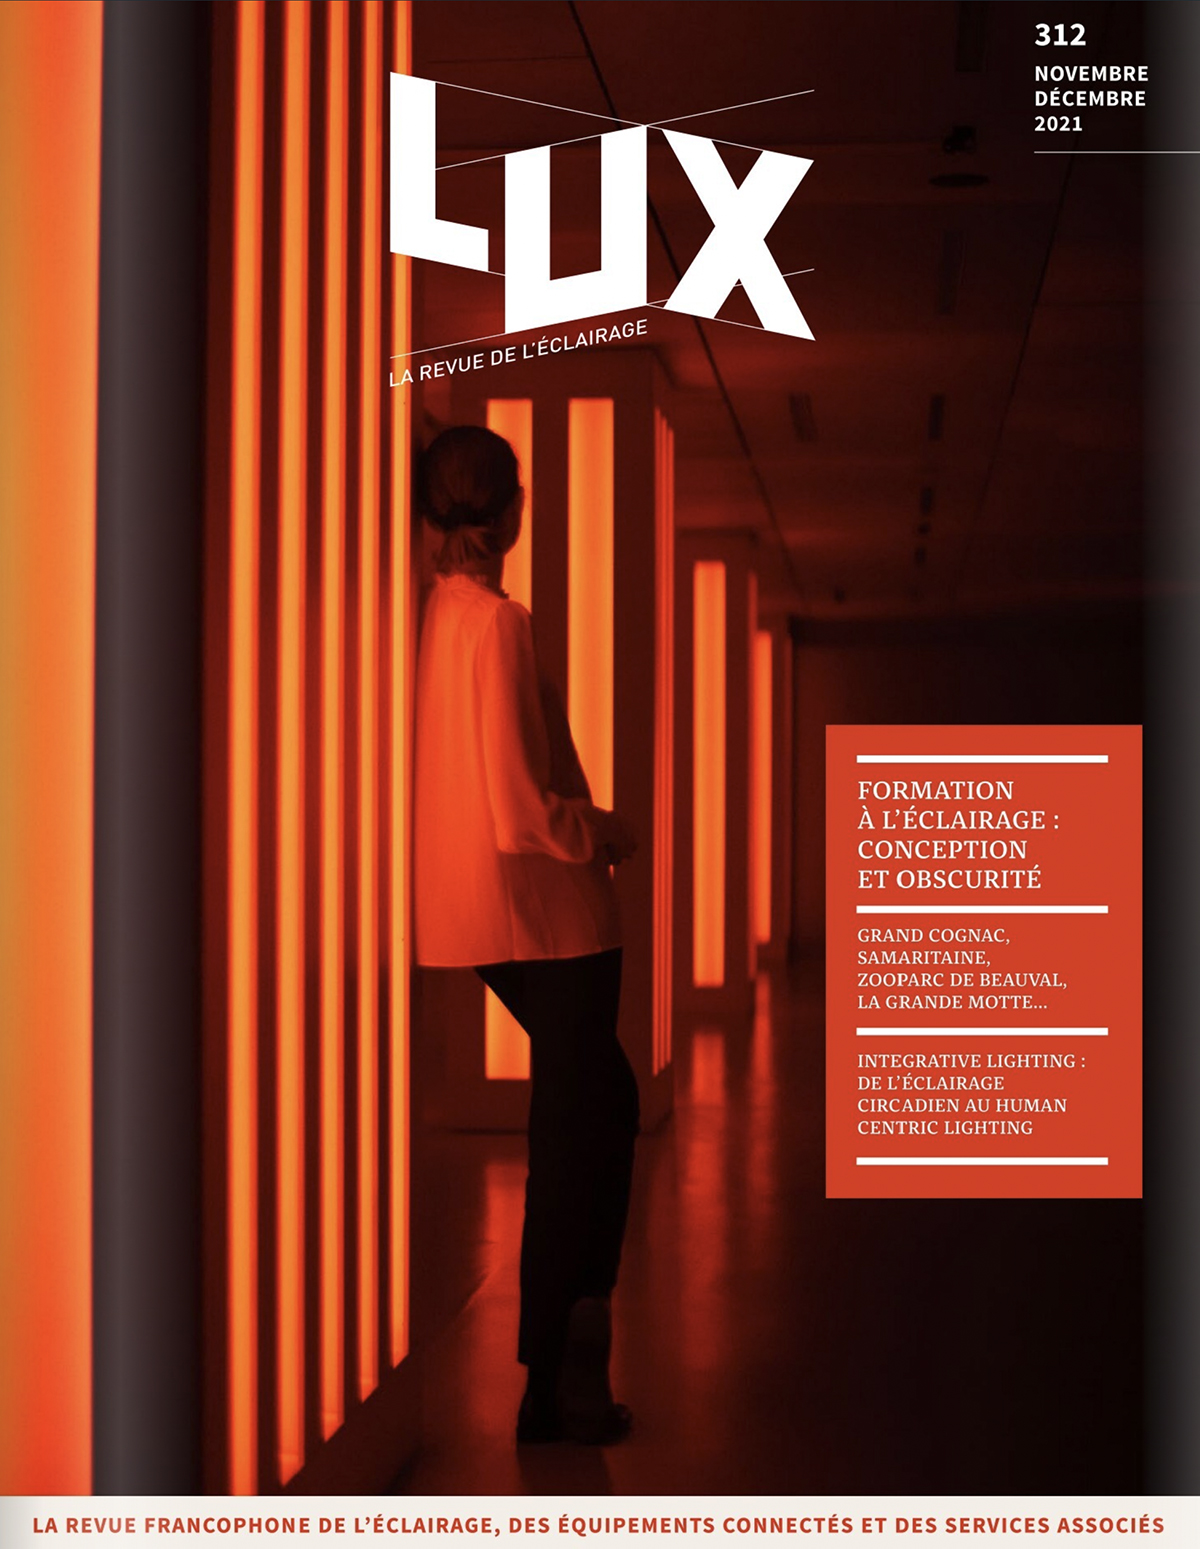 LUX-312-novembre-décembre-2021-couverture-Copyright-Societe-LUX